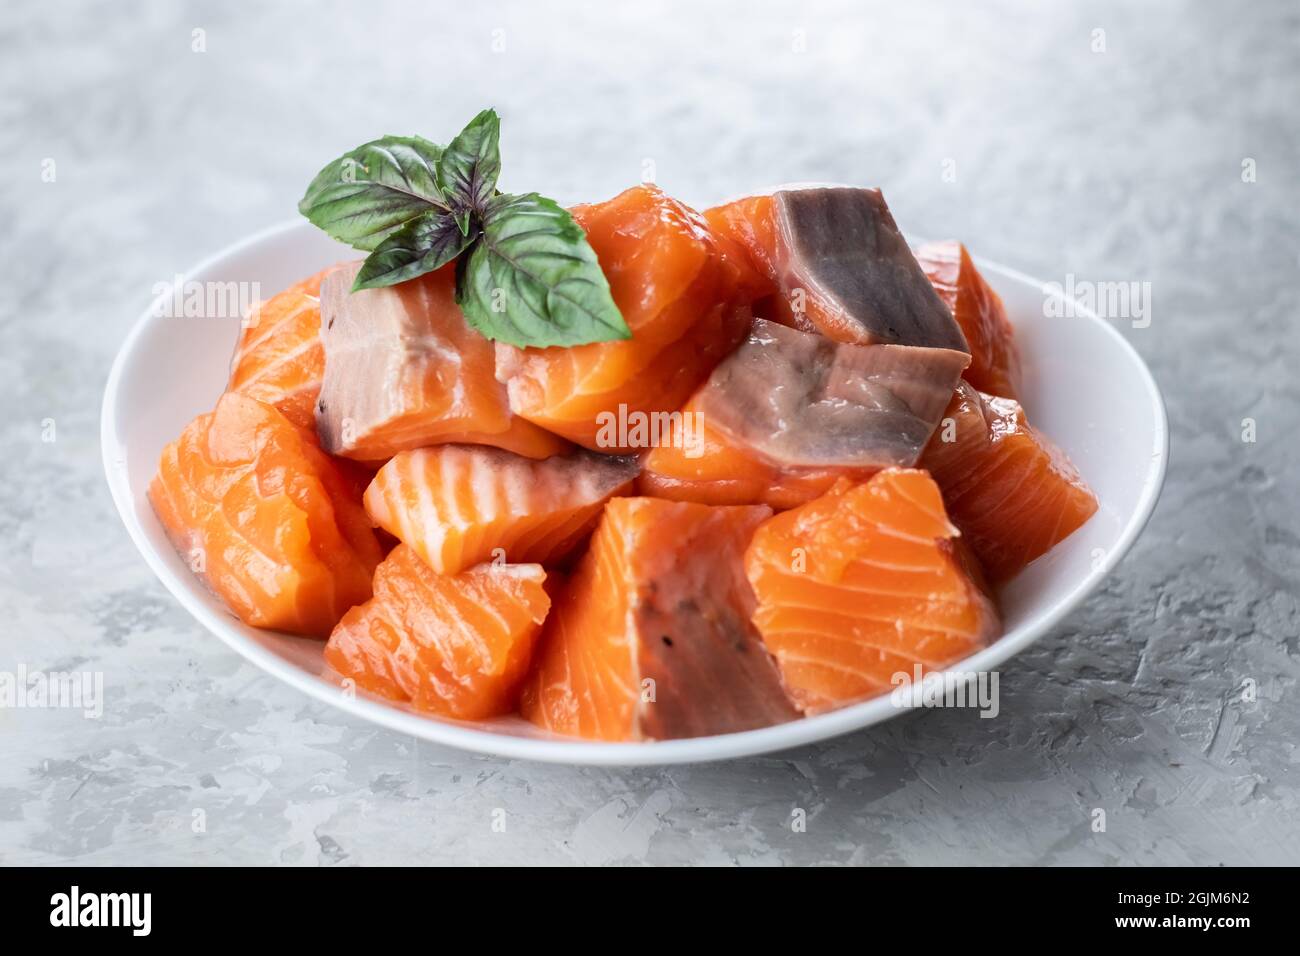 Morceaux de poisson de filet de truite de saumon dans la clôture de la plaque blanche. Photographie alimentaire Banque D'Images